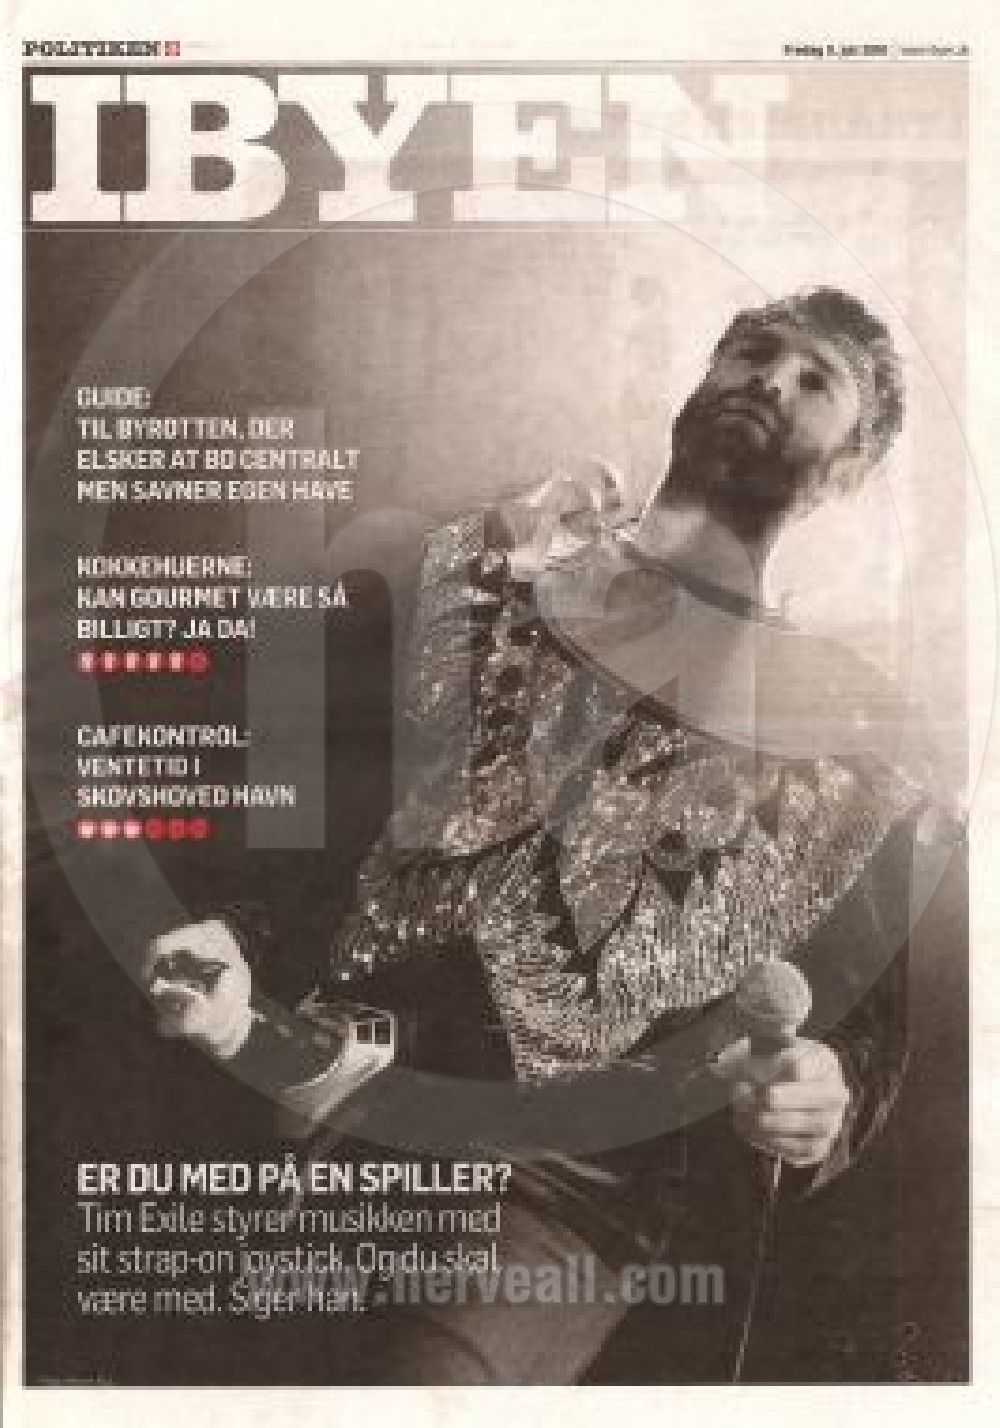 politiken.dk-tim-exile-july-2010-print-cover